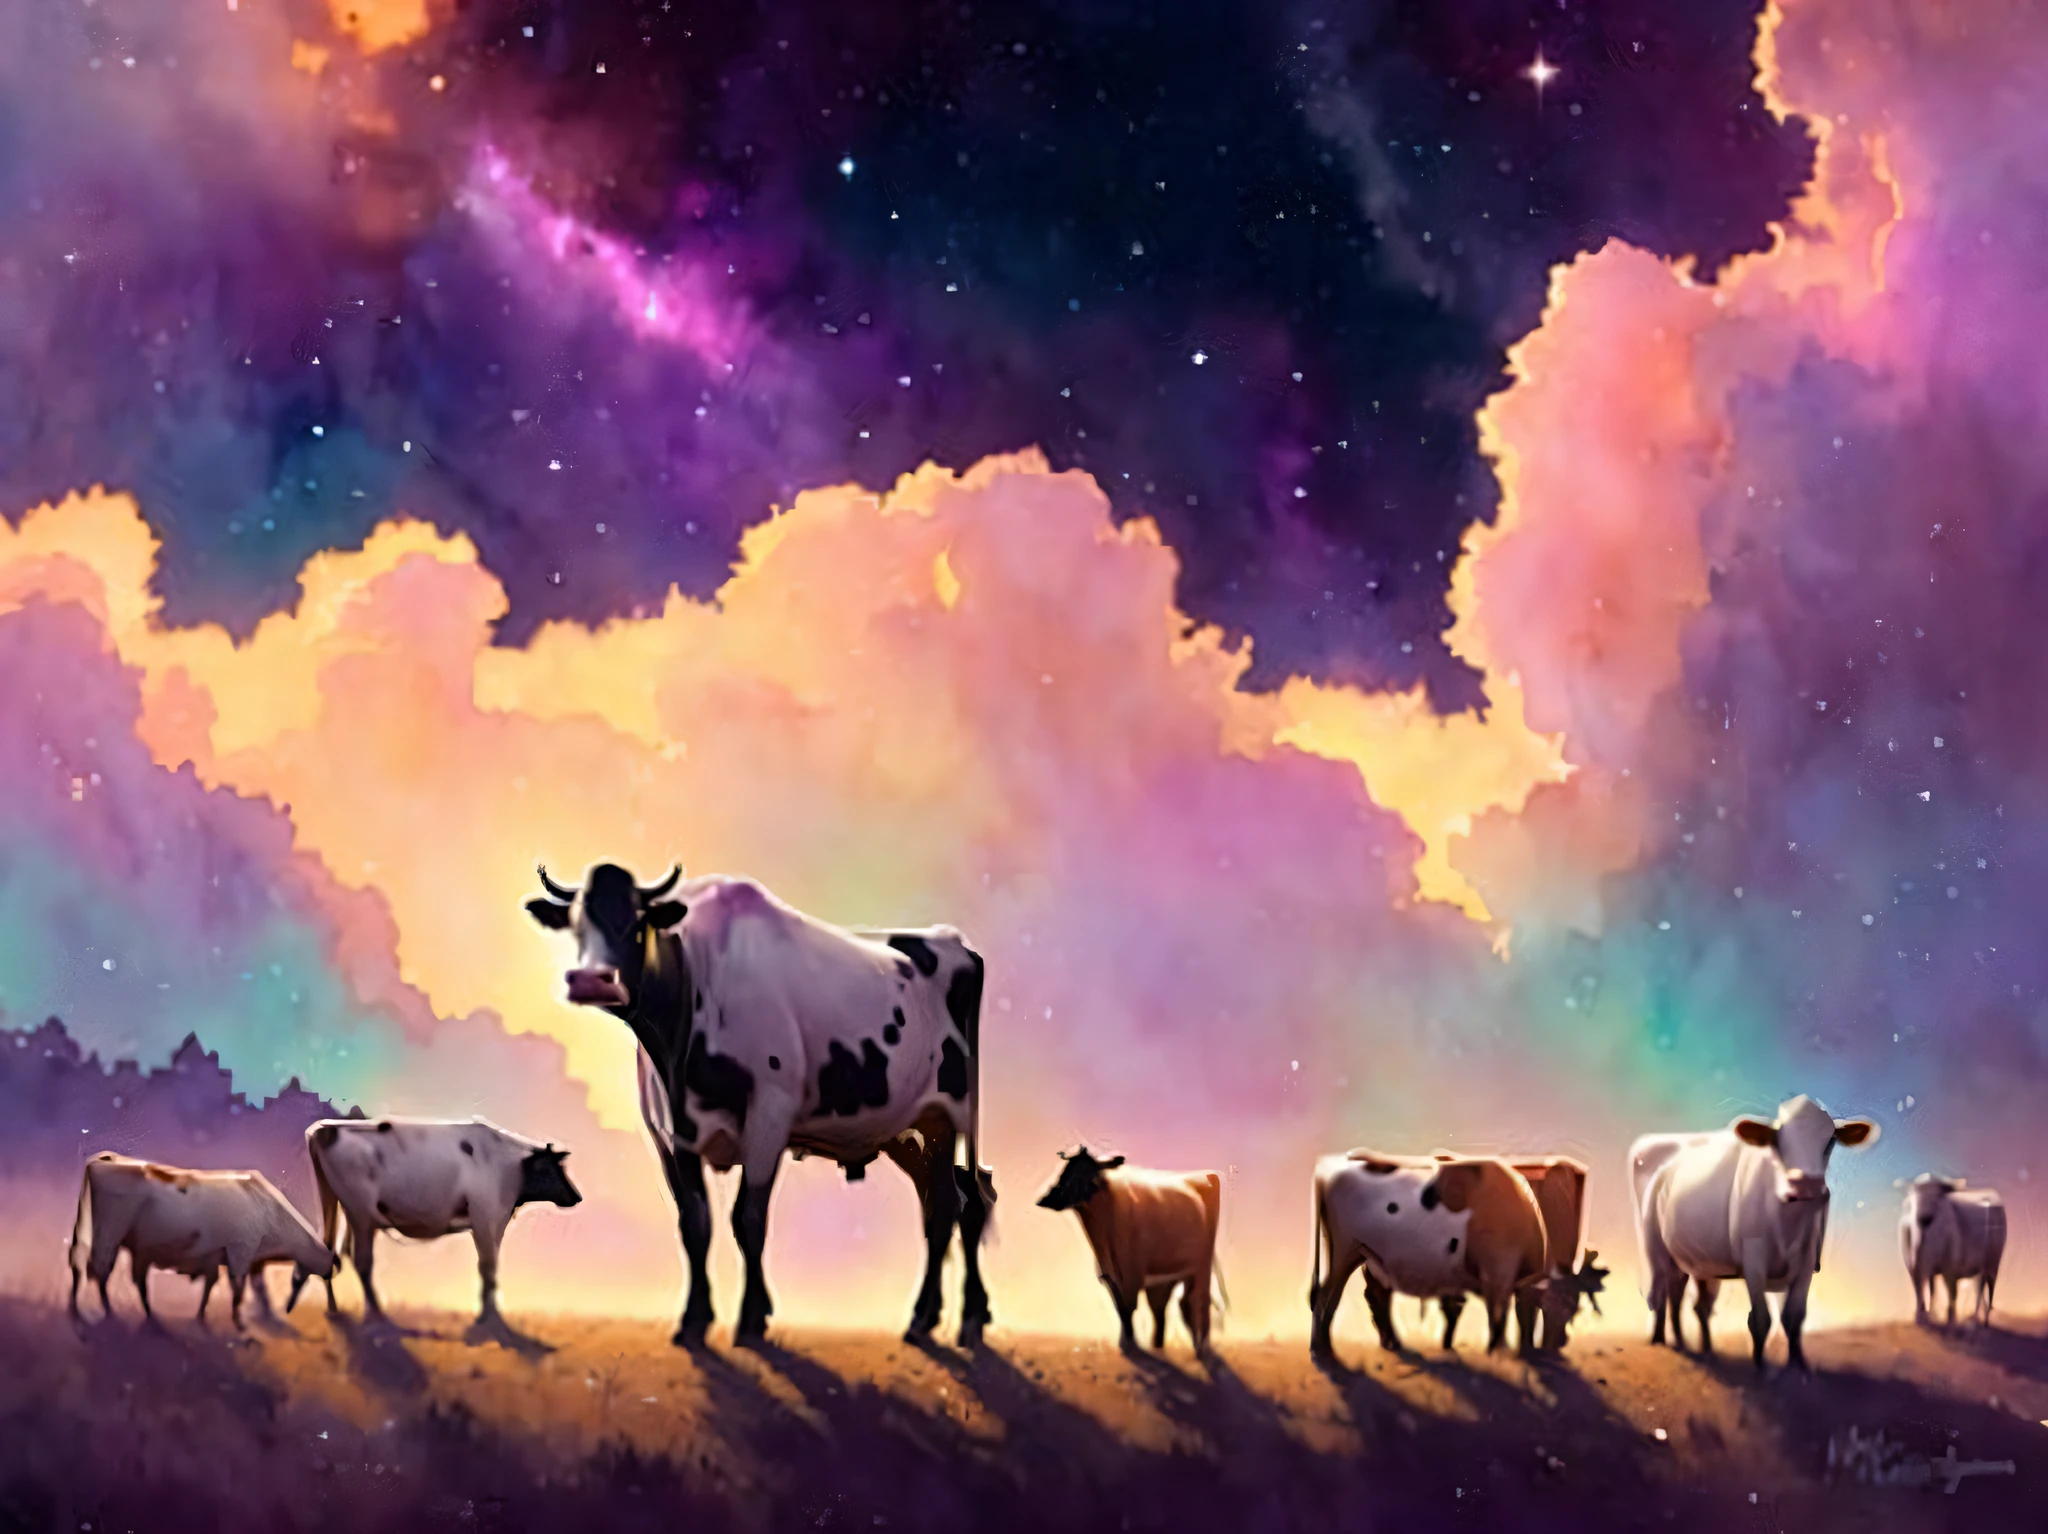 牛，它們被星雲包圍, 非常詳細, 金絲, 浪漫故事書幻想, 柔和的電影燈光, 獎, 迪士尼概念藝術水彩插圖由 Mandy Jurgens、Alphonse Mucha 和 Alena Aenami 繪製, 柔和的調色板, ArtStation 上的精選